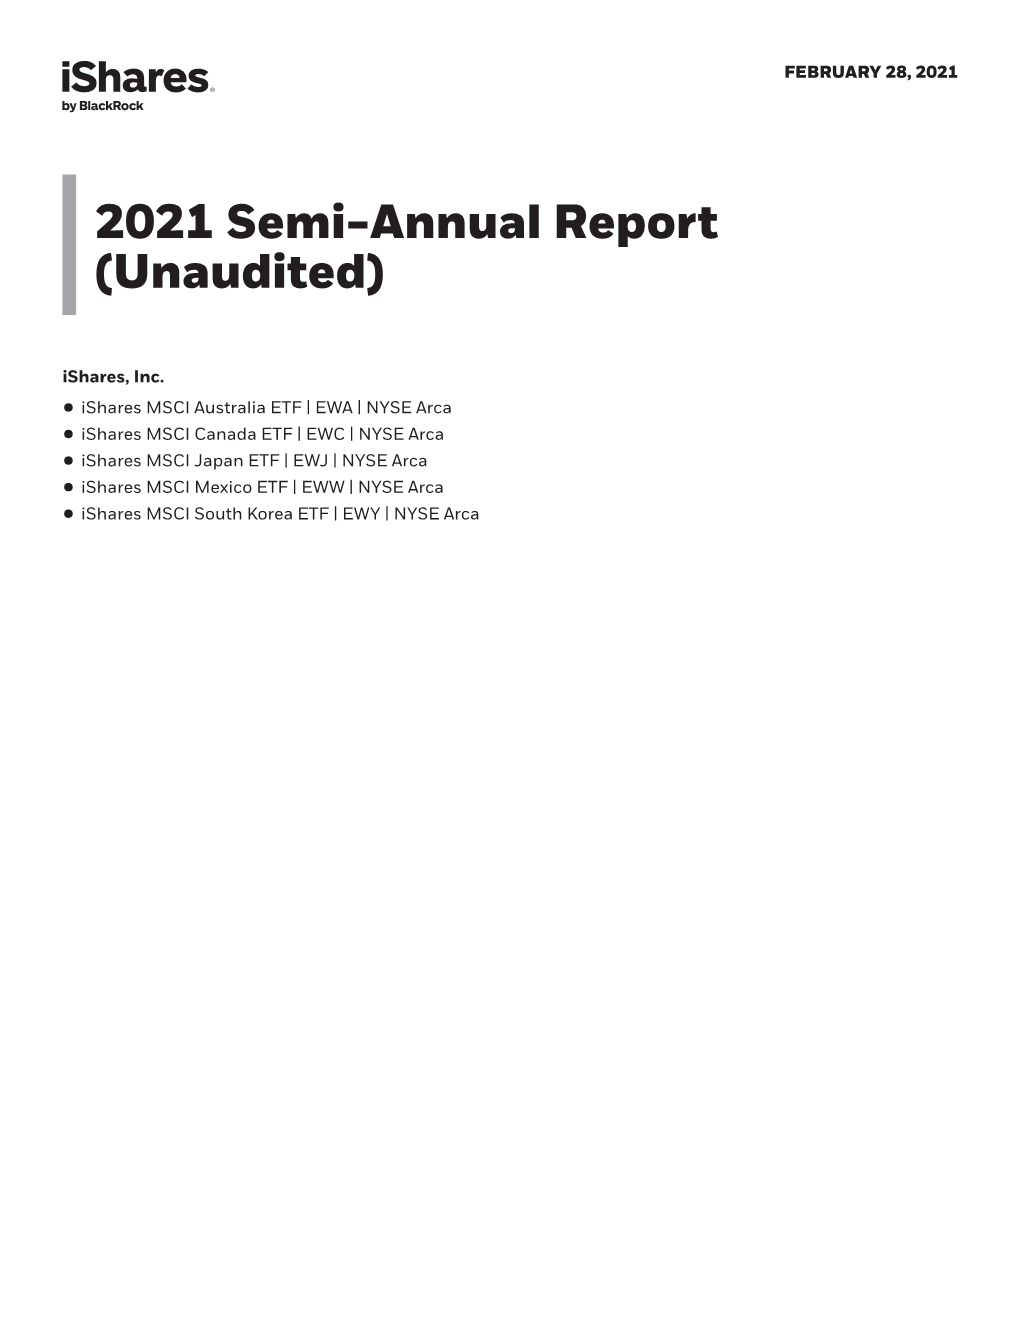 2021 Semi-Annual Report (Unaudited) Ishares, Inc